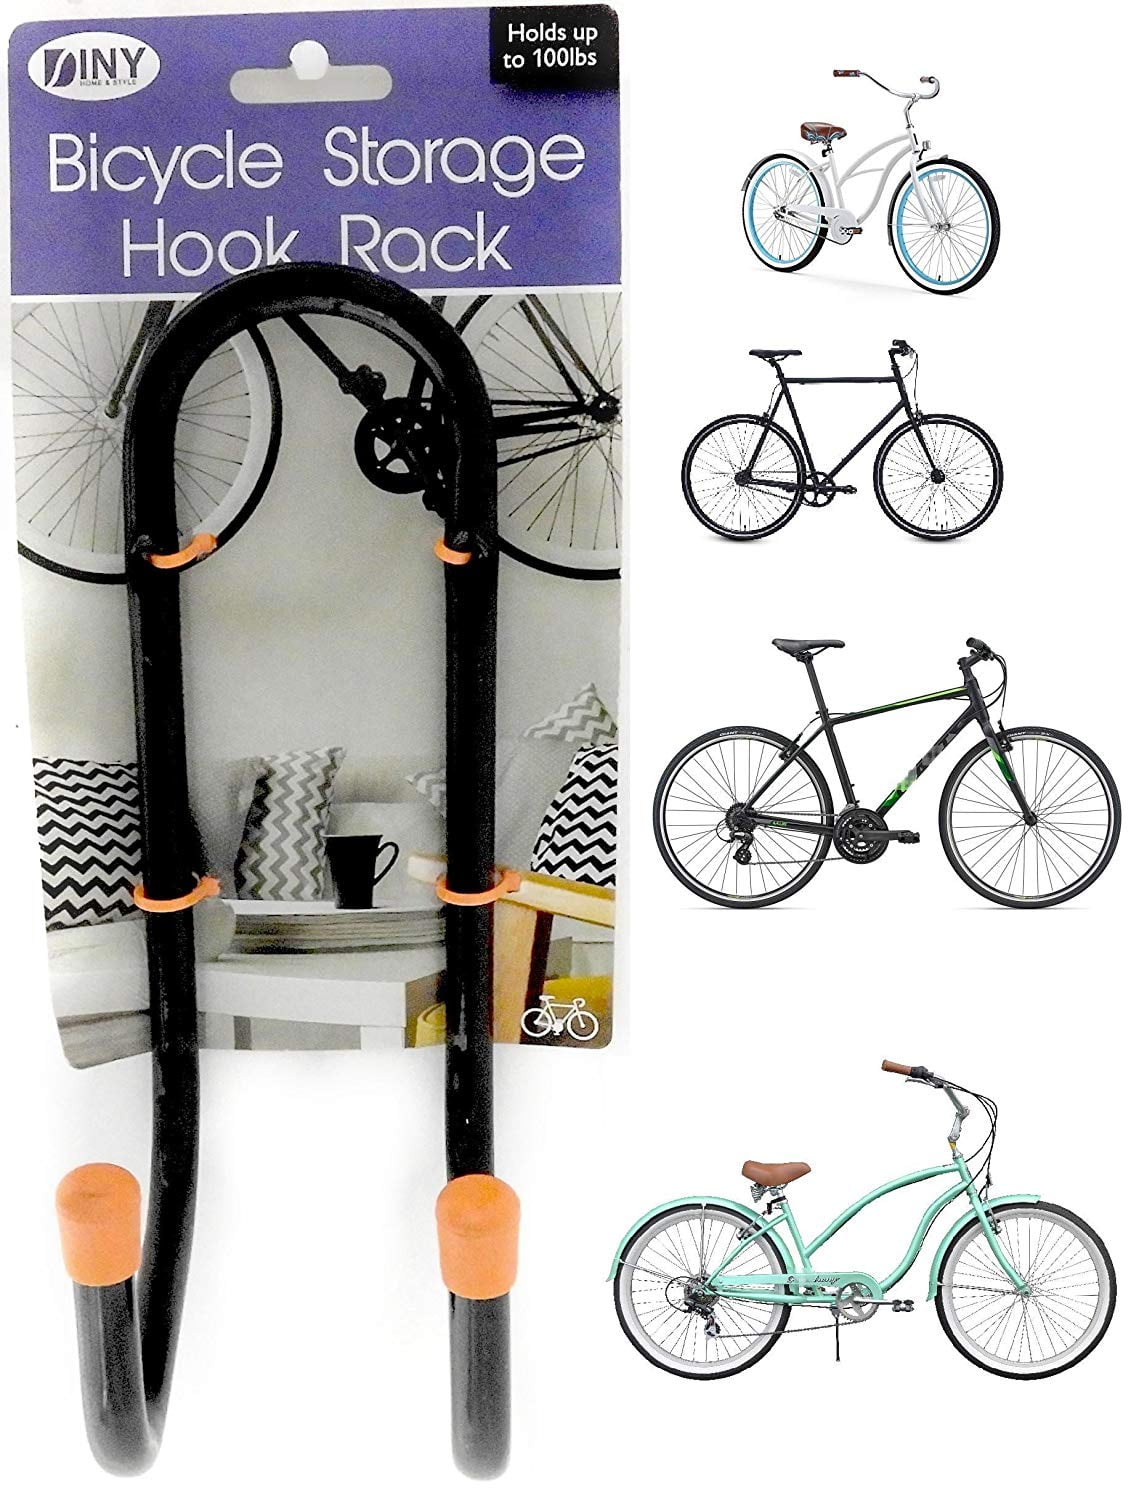 2Pcs 100lbs Heavy Duty Garage Storage Hooks Wall-Mounted Utility Hanger for Bike 